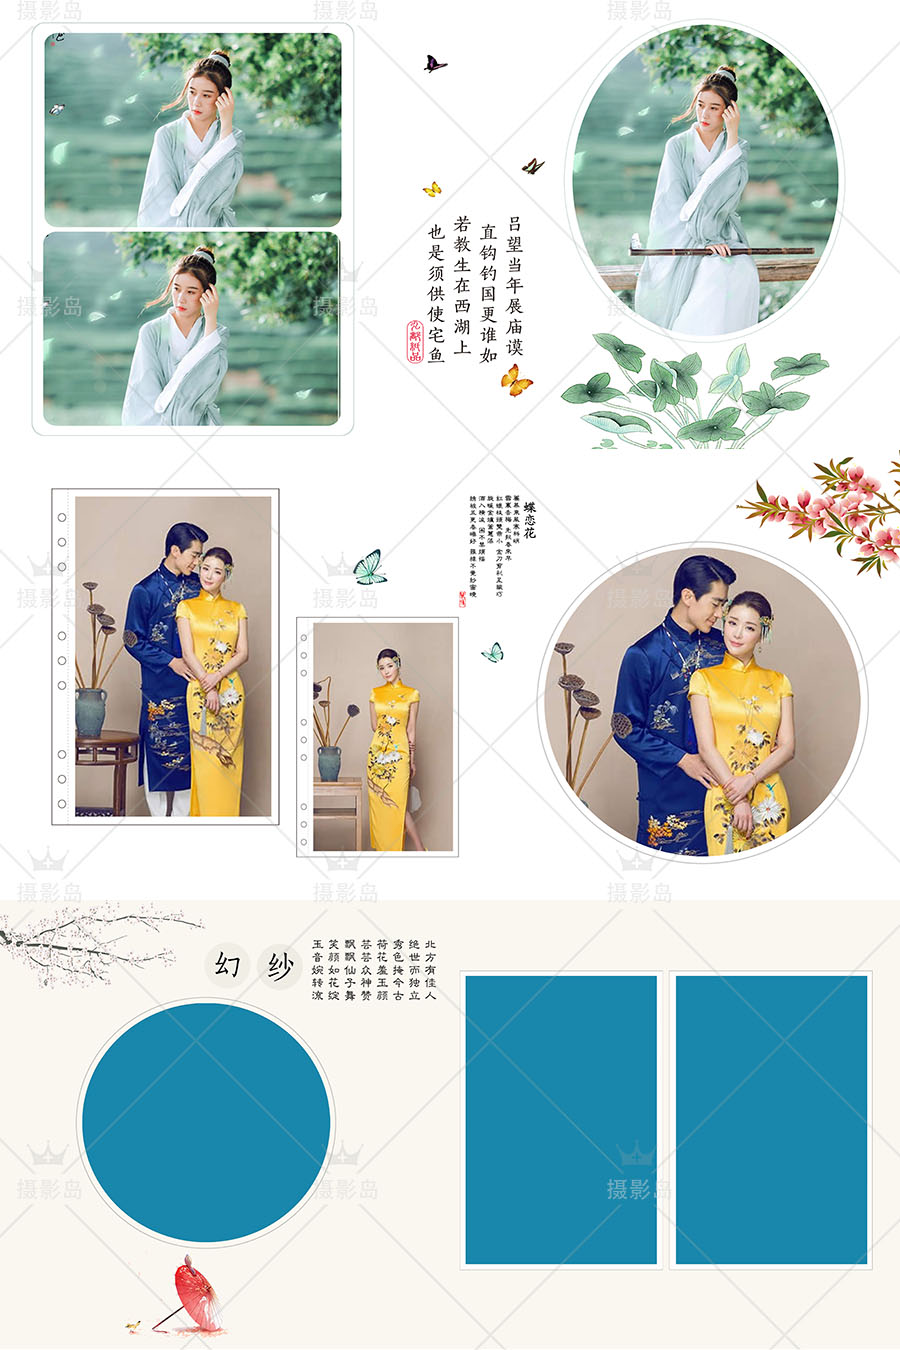 中国风古装主题写真PSD素材相册模板，影楼婚纱摄情侣后期排版素材